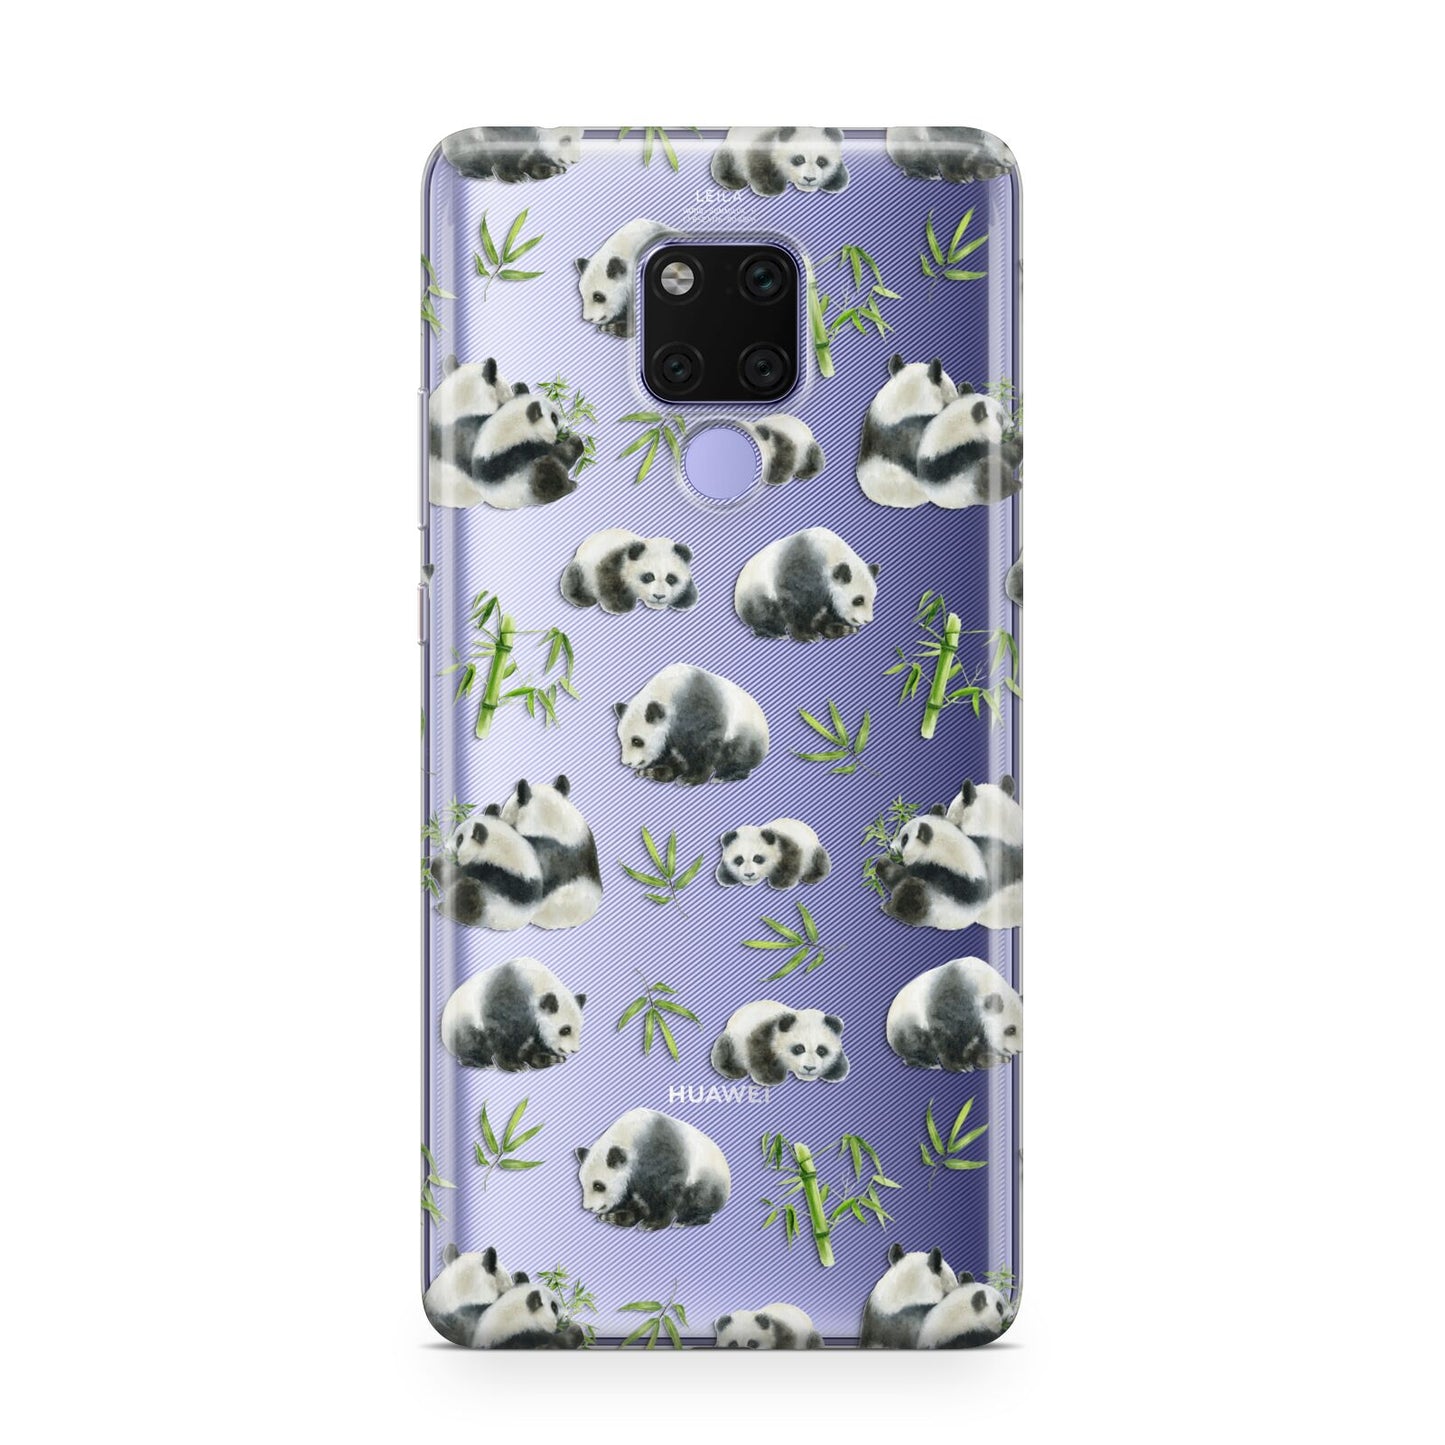 Panda Huawei Mate 20X Phone Case